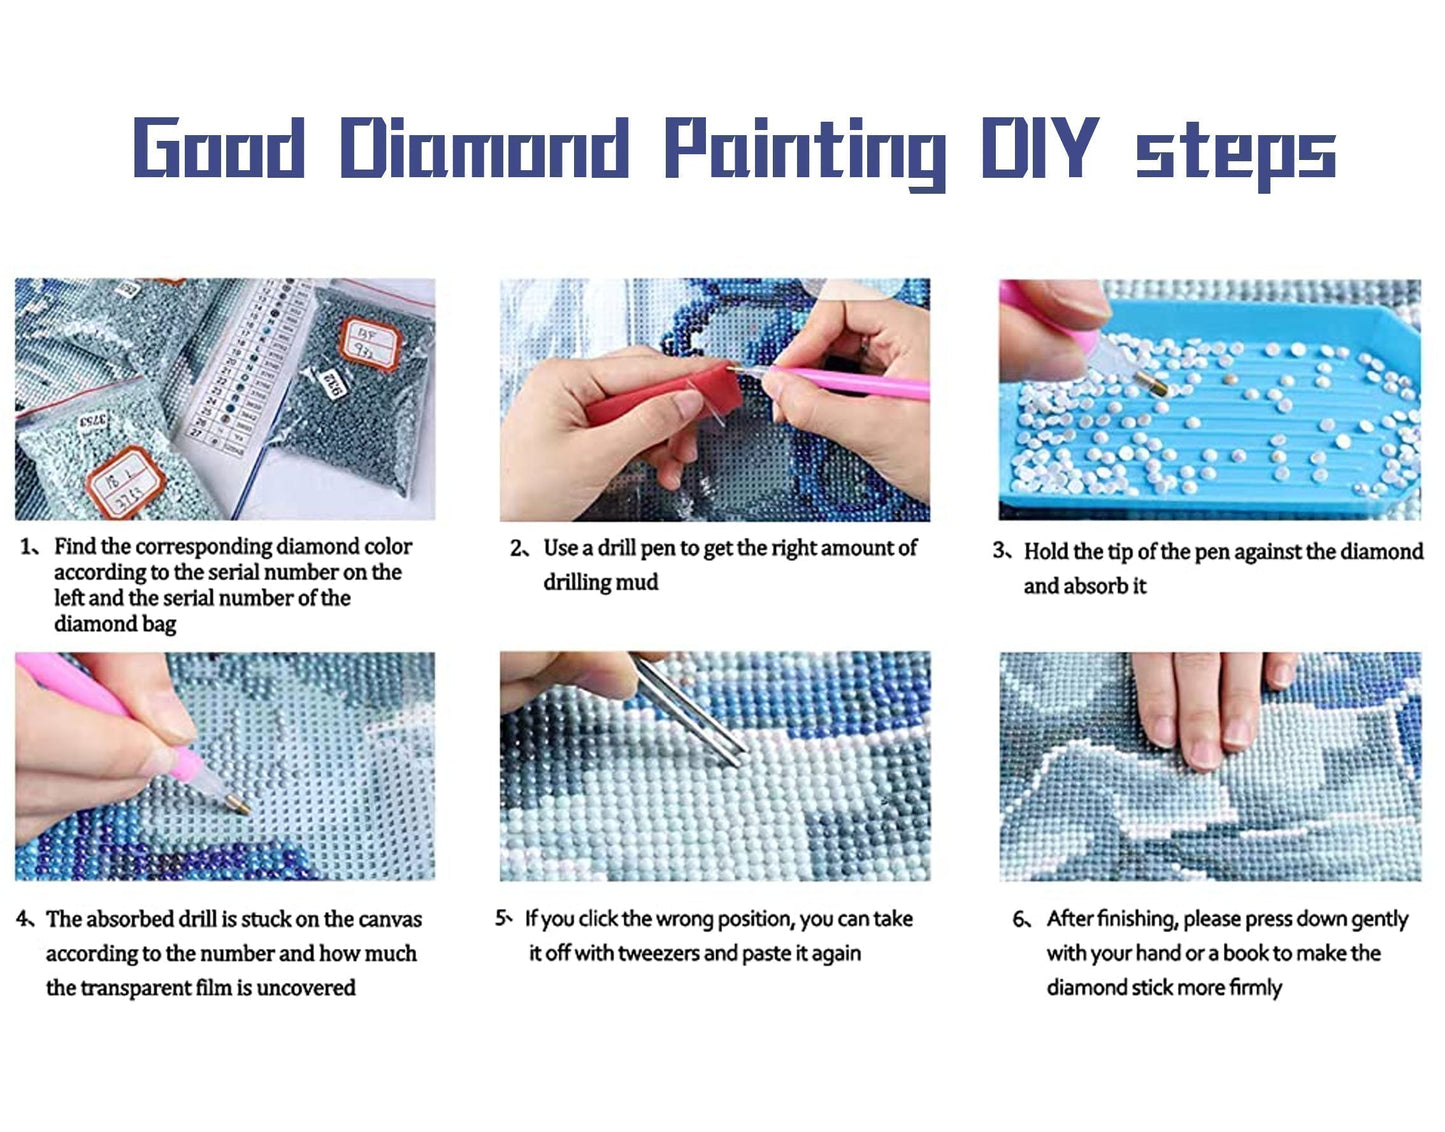 Esquilo | Kits completos de pintura diamante redondo/quadrado 40x40cm 50x50cm D